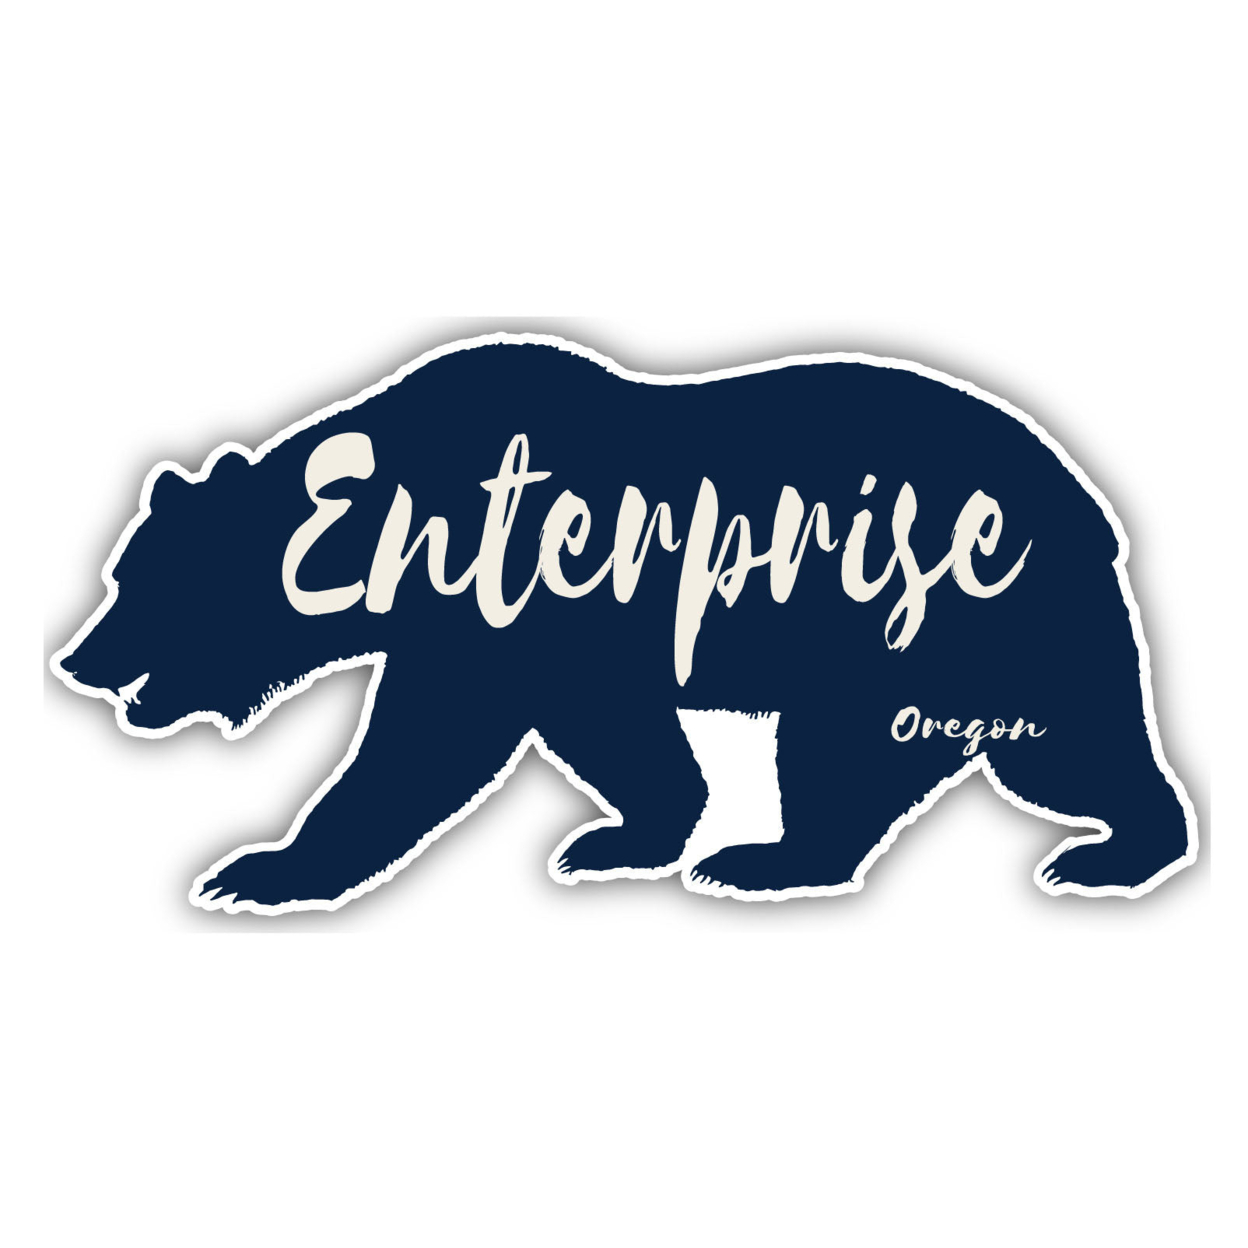 Enterprise Oregon Souvenir Decorative Stickers (Choose Theme And Size) - Single Unit, 12-Inch, Bear